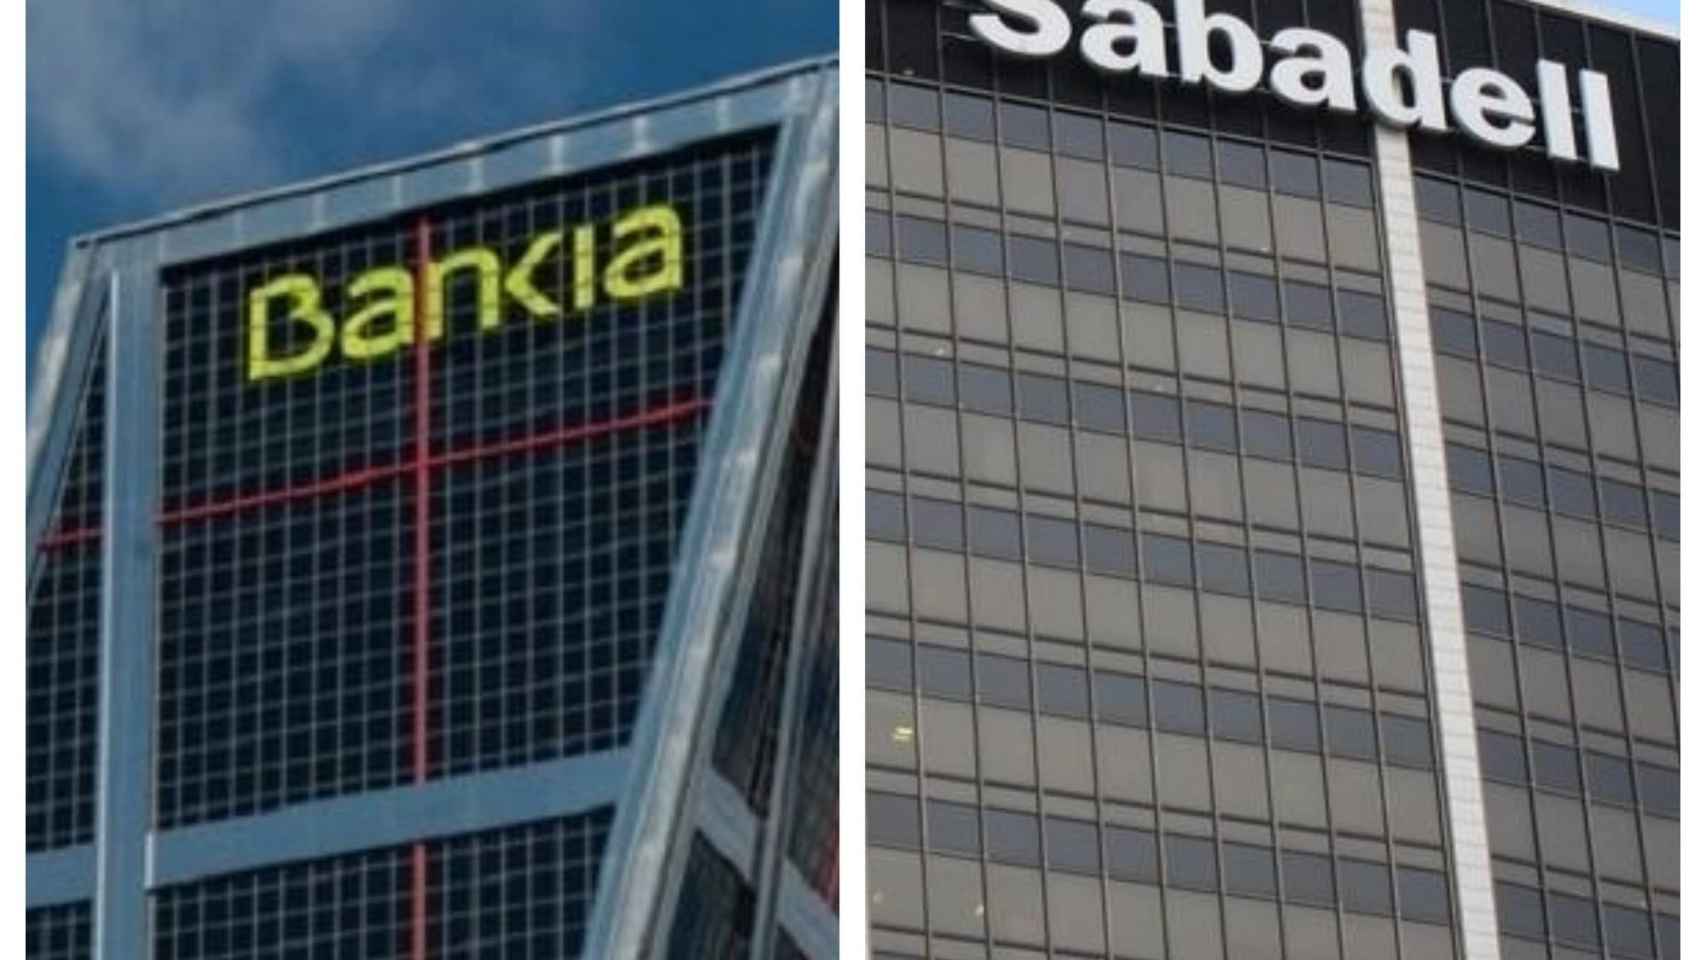 Las sedes de Bankia y Sabadell / EUROPA PRESS